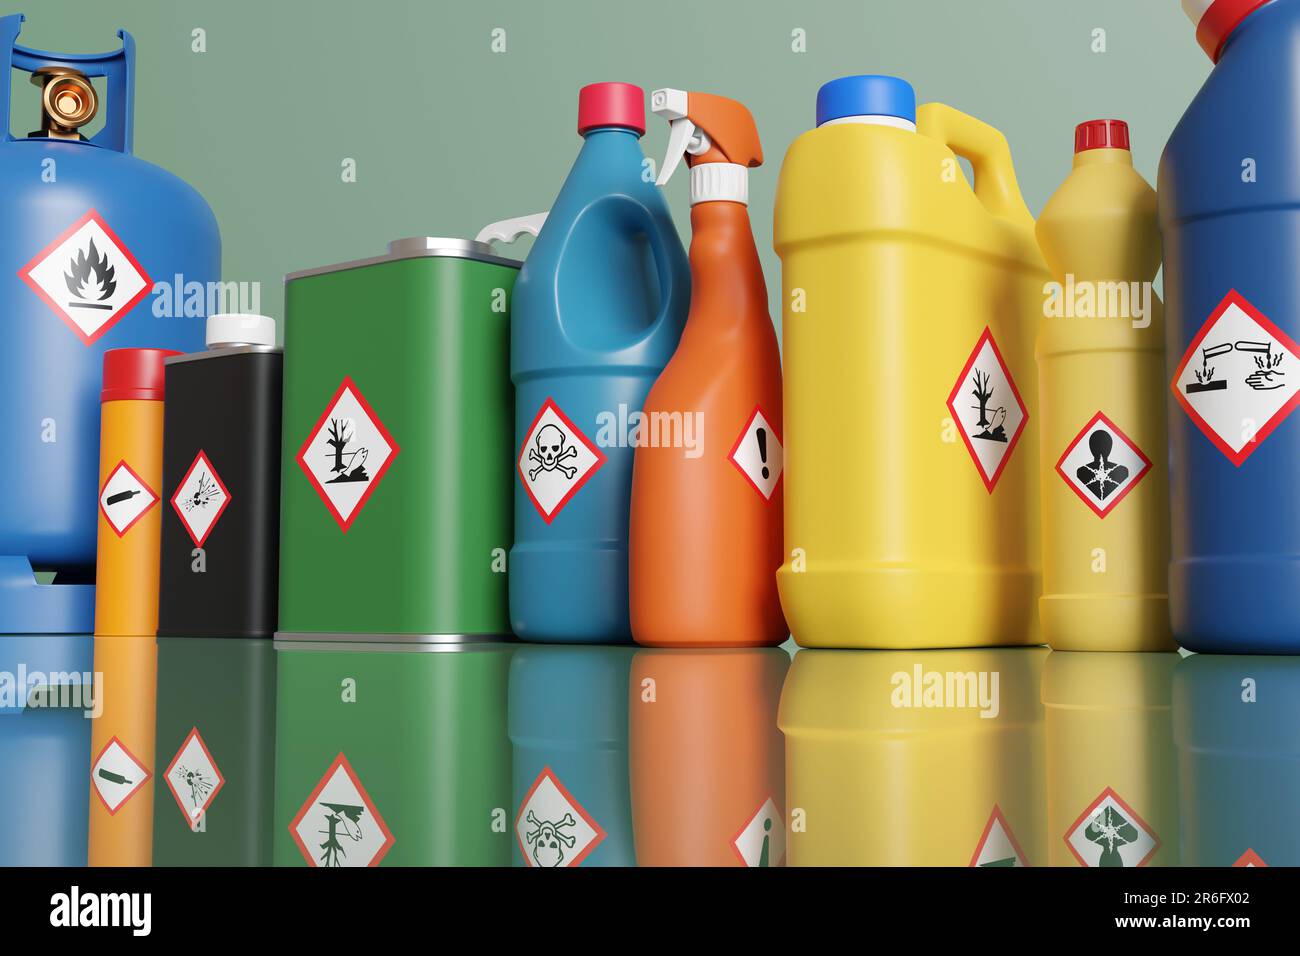 Kunststoffflaschen und Metalldosen mit unterschiedlichen Gefahrenwarnetiketten. Illustration des Begriffs "Warnung bei chemischer Klassifizierung" Stockfoto